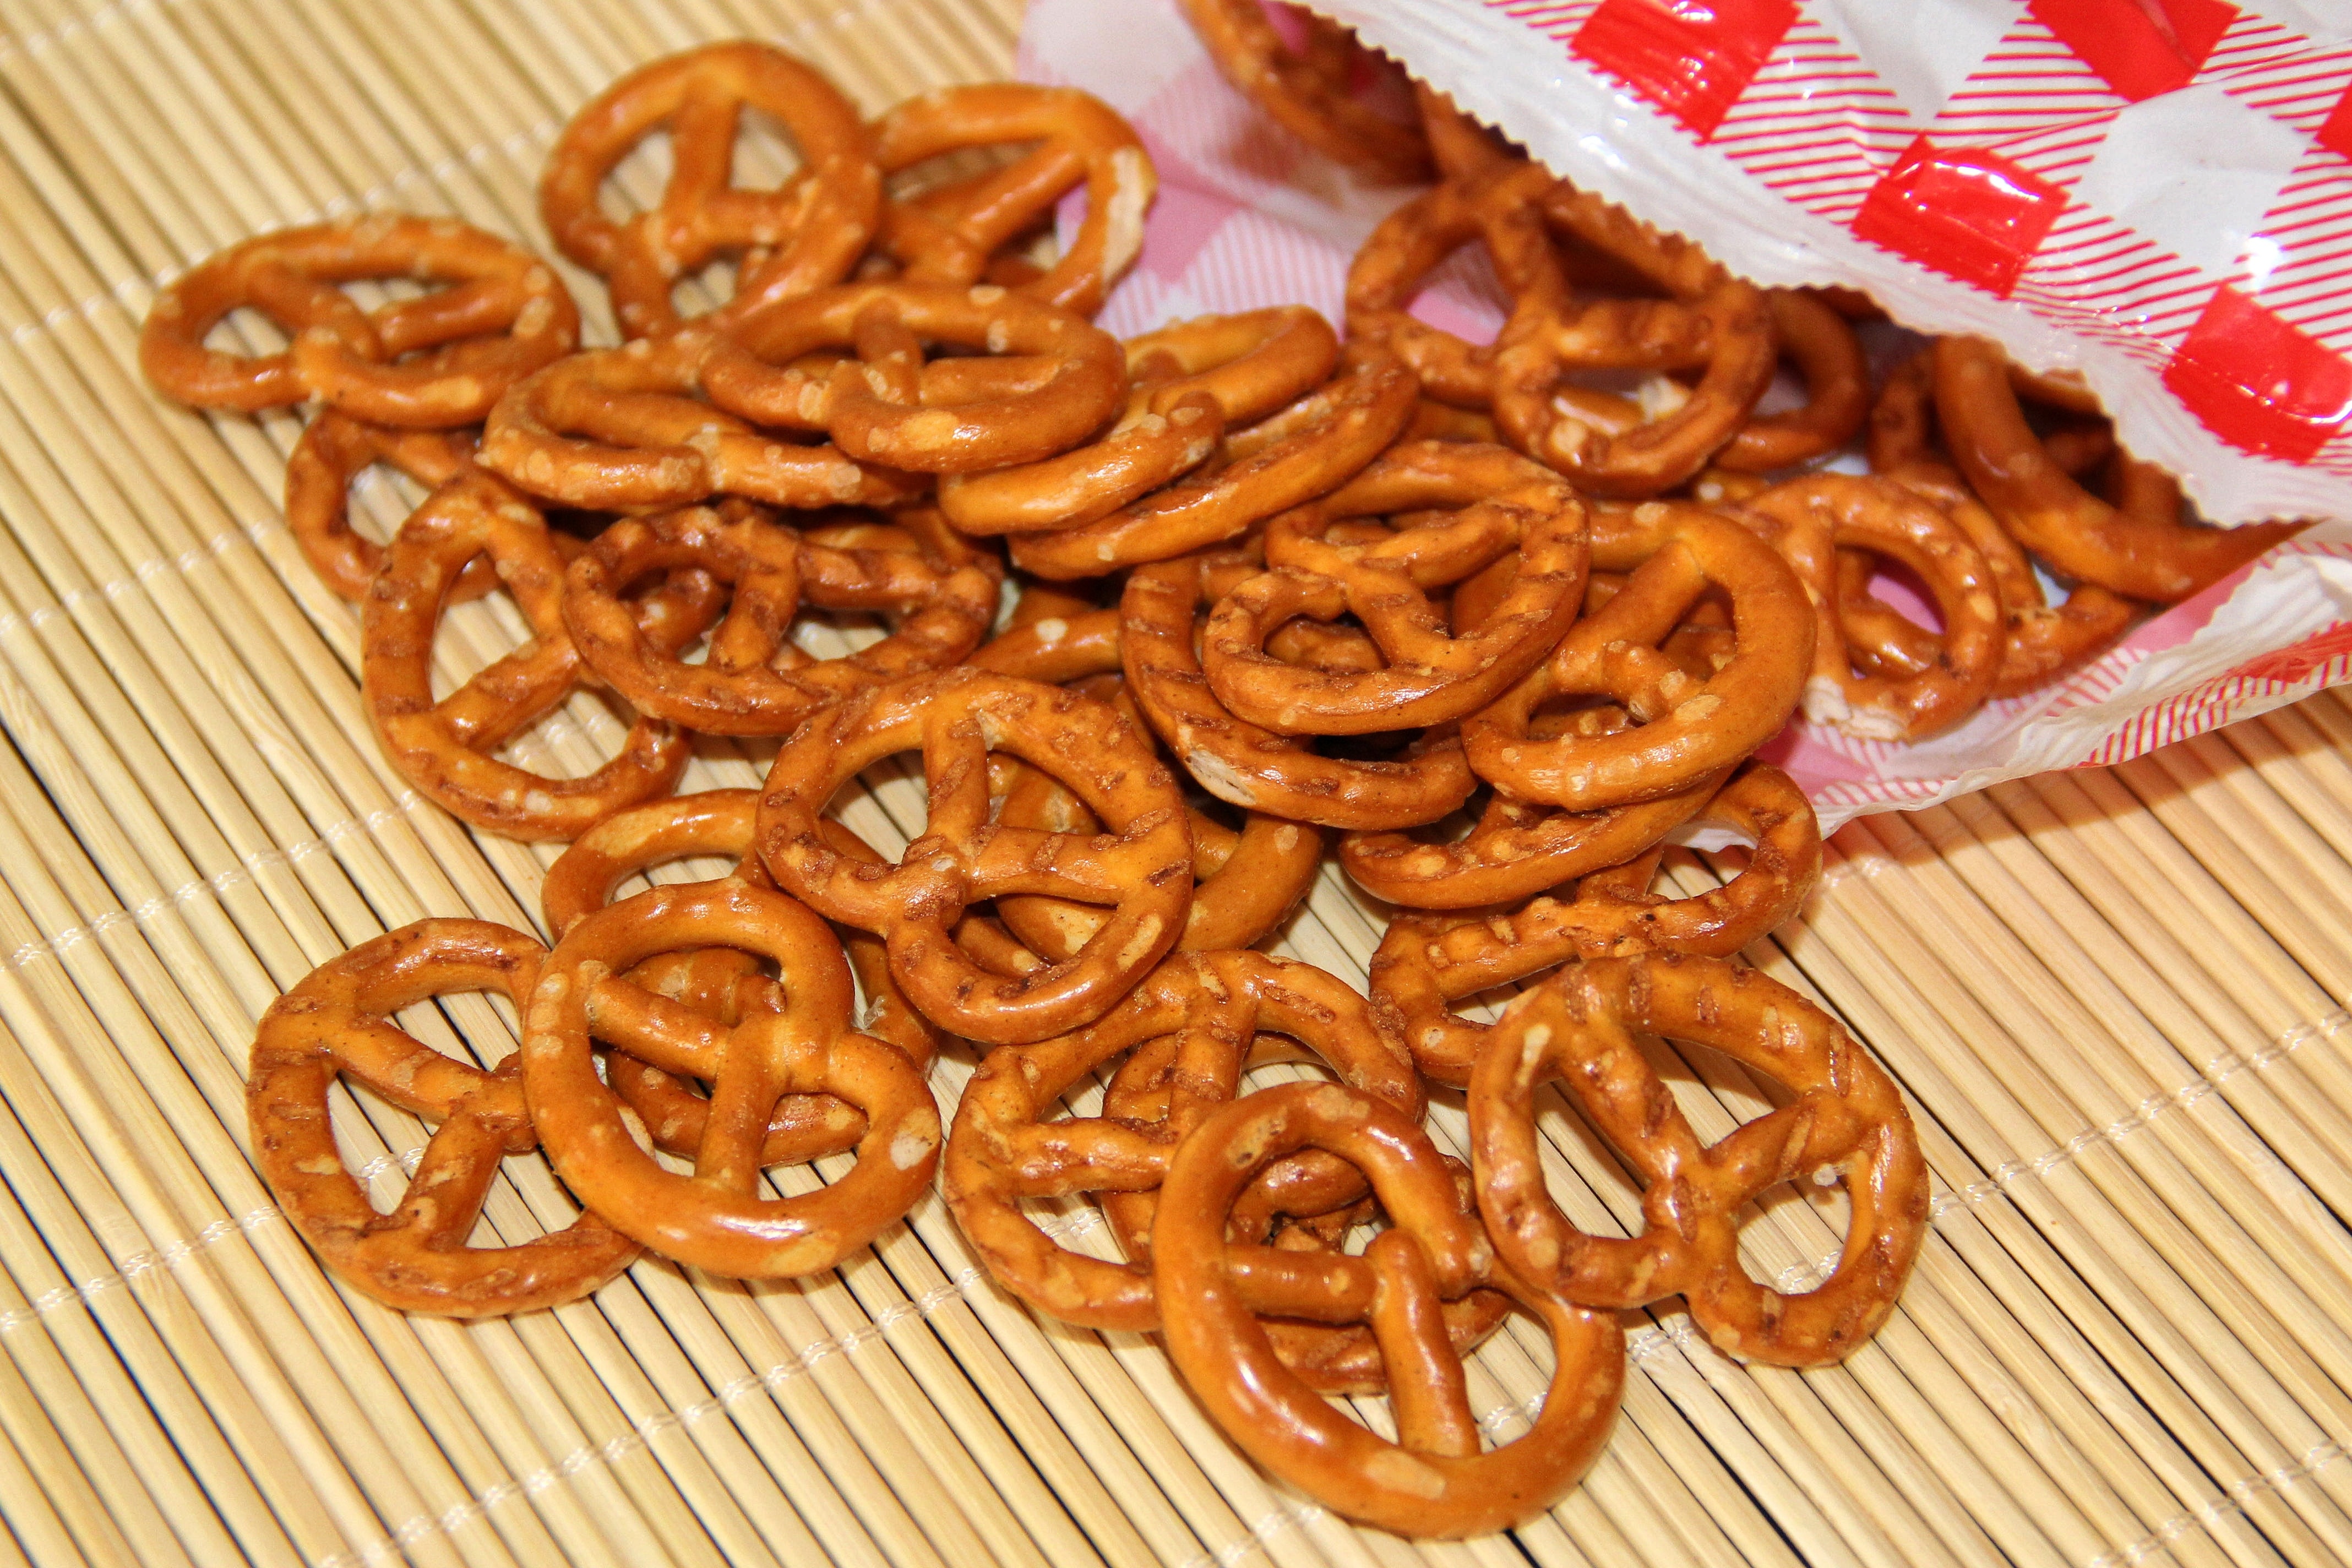 brown pretzels